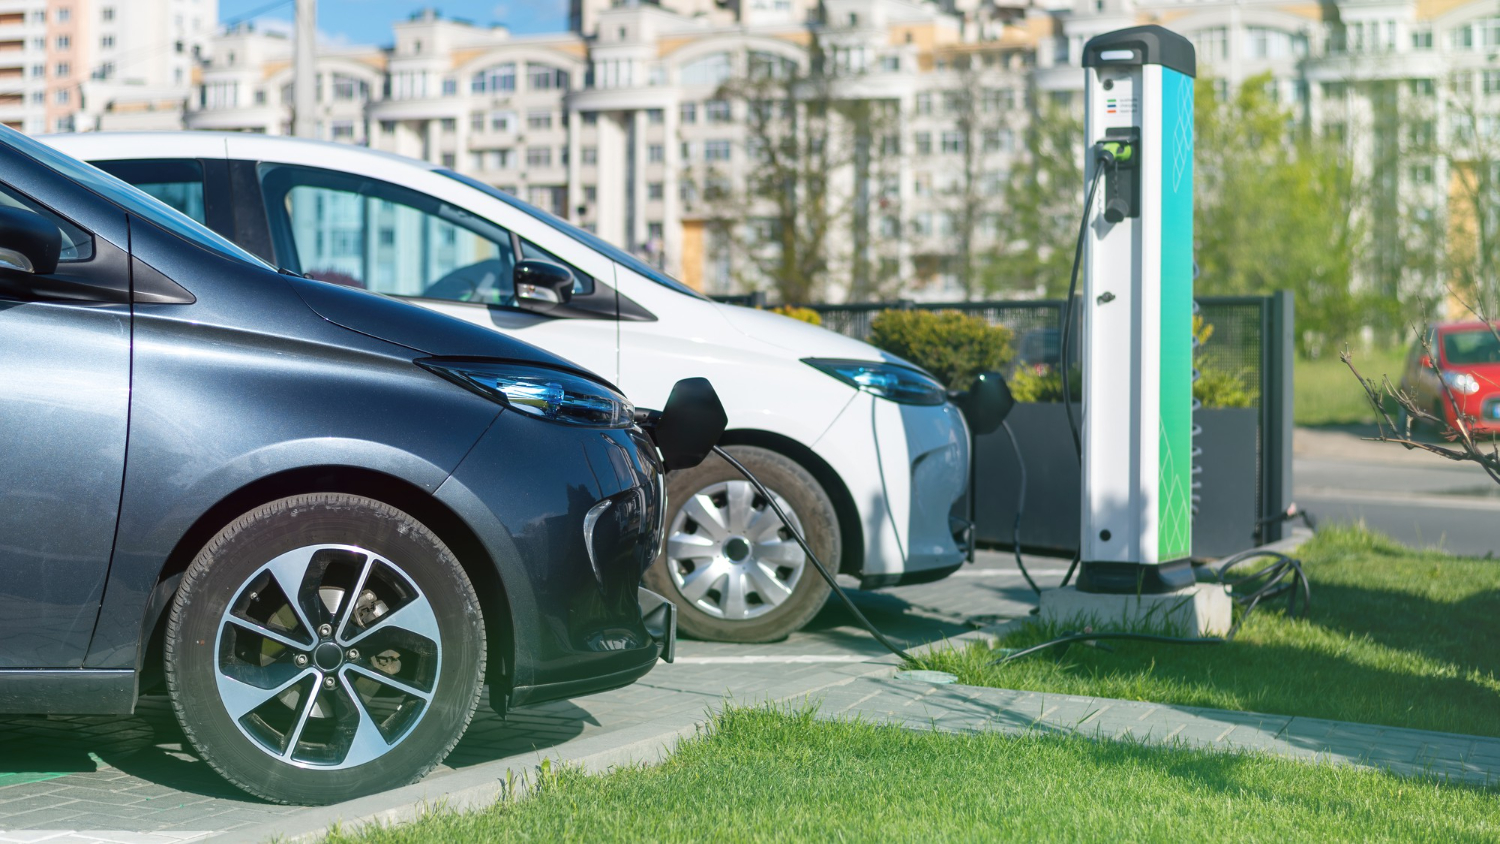 Dopłaty do używanych aut elektrycznych mogłyby pobudzić rynek elektromobilności. Więcej takich pojazdów przyjeżdżałoby z zagranicy